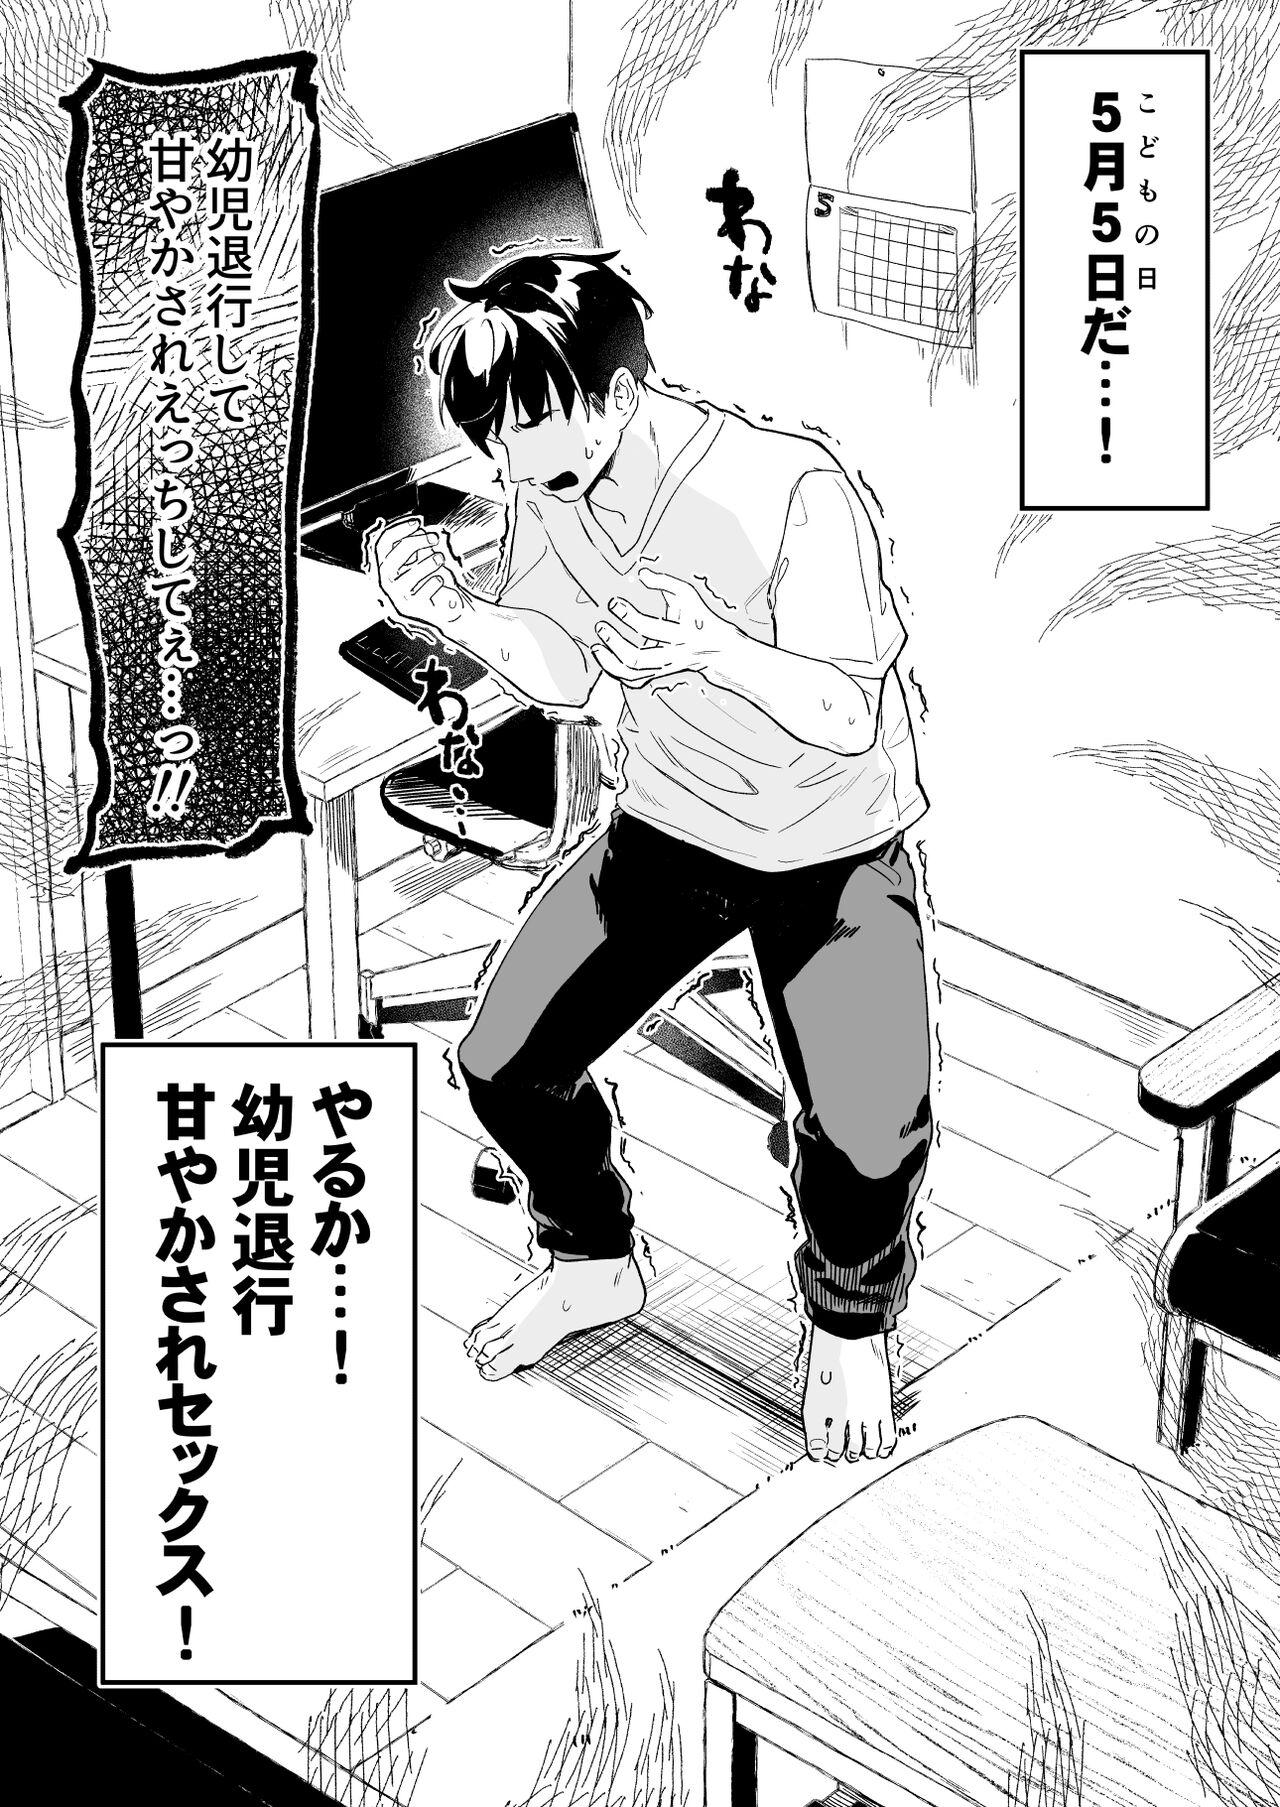 Flashing [Tamano Kedama] Kodomo no Hi (Imishin) ni Mukete Manga o Kaku - Original Transex - Page 3